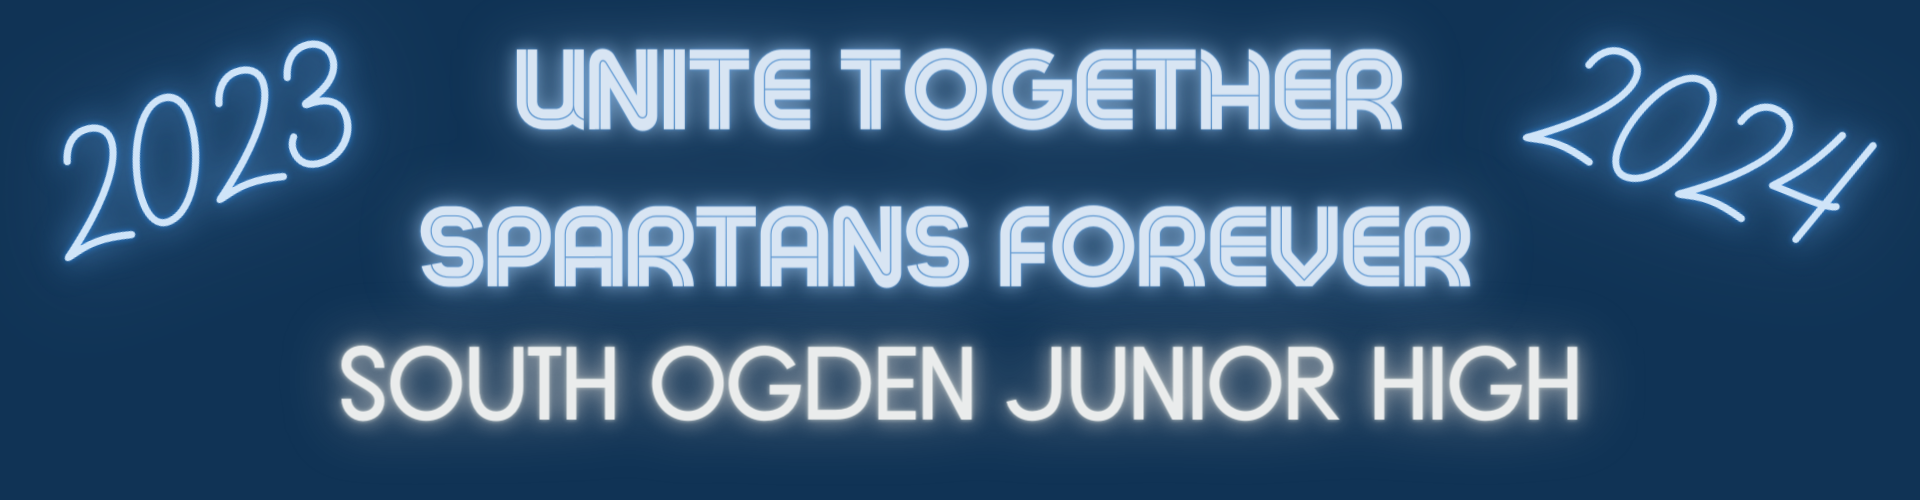 Unite Together spartans forever